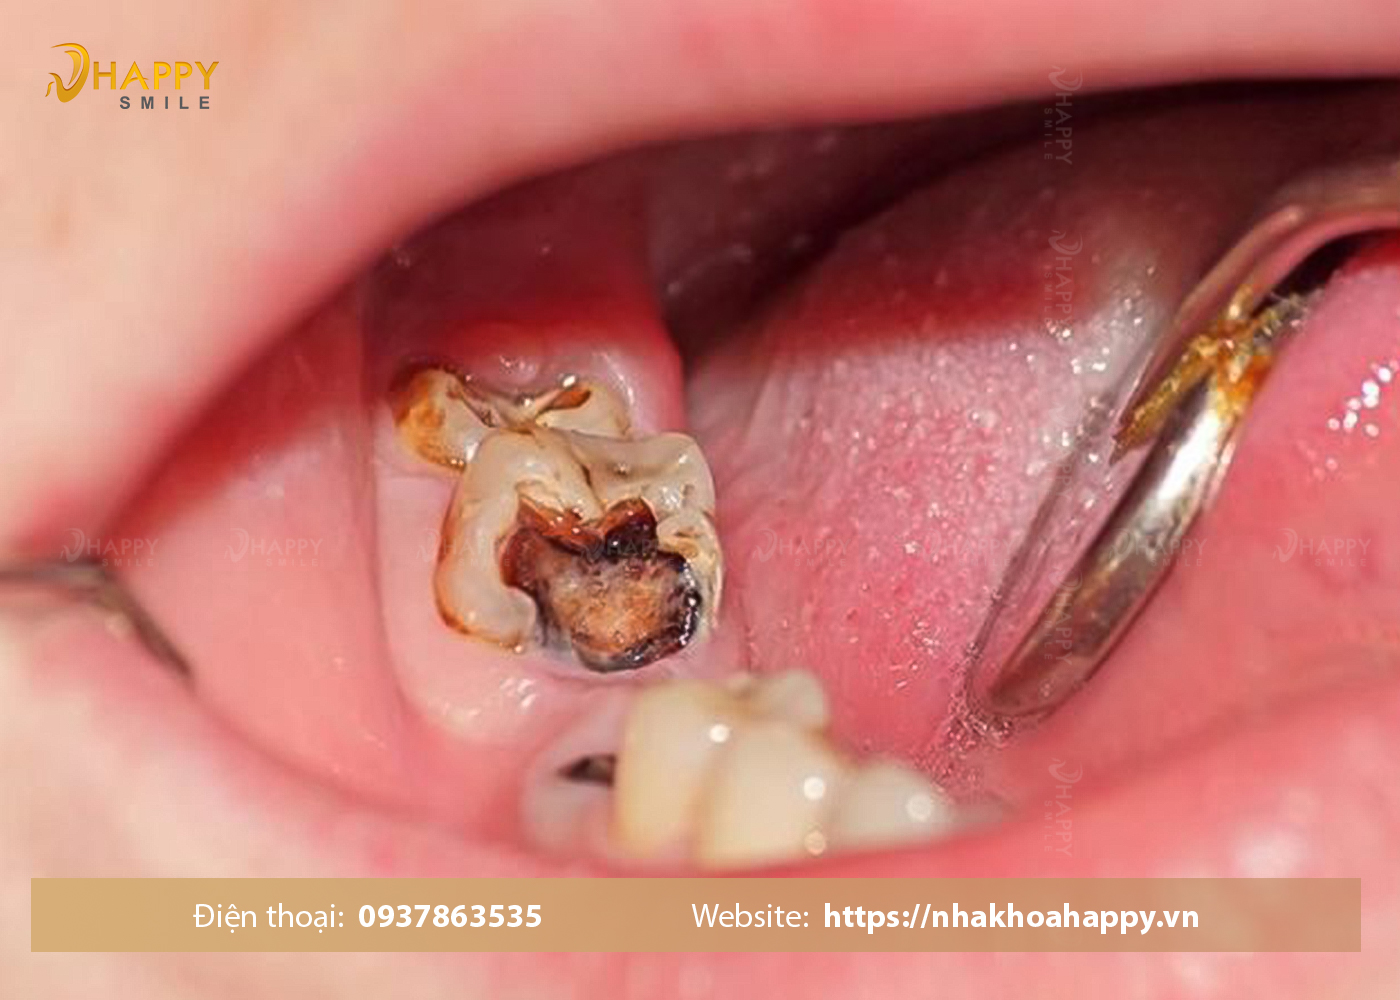 Răng bị sâu lỗ to có nguy hiểm không ? Điều trị răng bị sâu lỗ to như thế nào